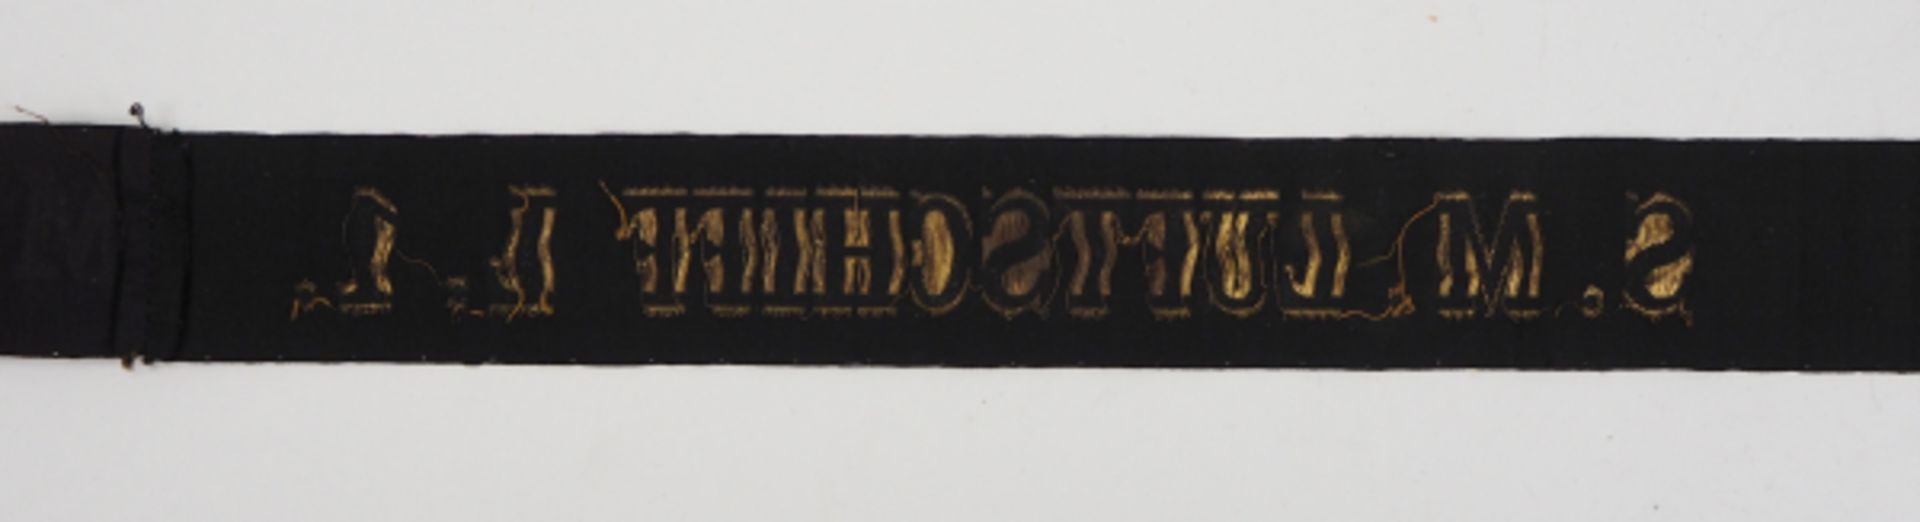 Mützenband: S.M. LUFTSCHIFF L.1.Schwarzes Band mit eingewebten goldenen Lettern.Zustand: II - Bild 3 aus 3